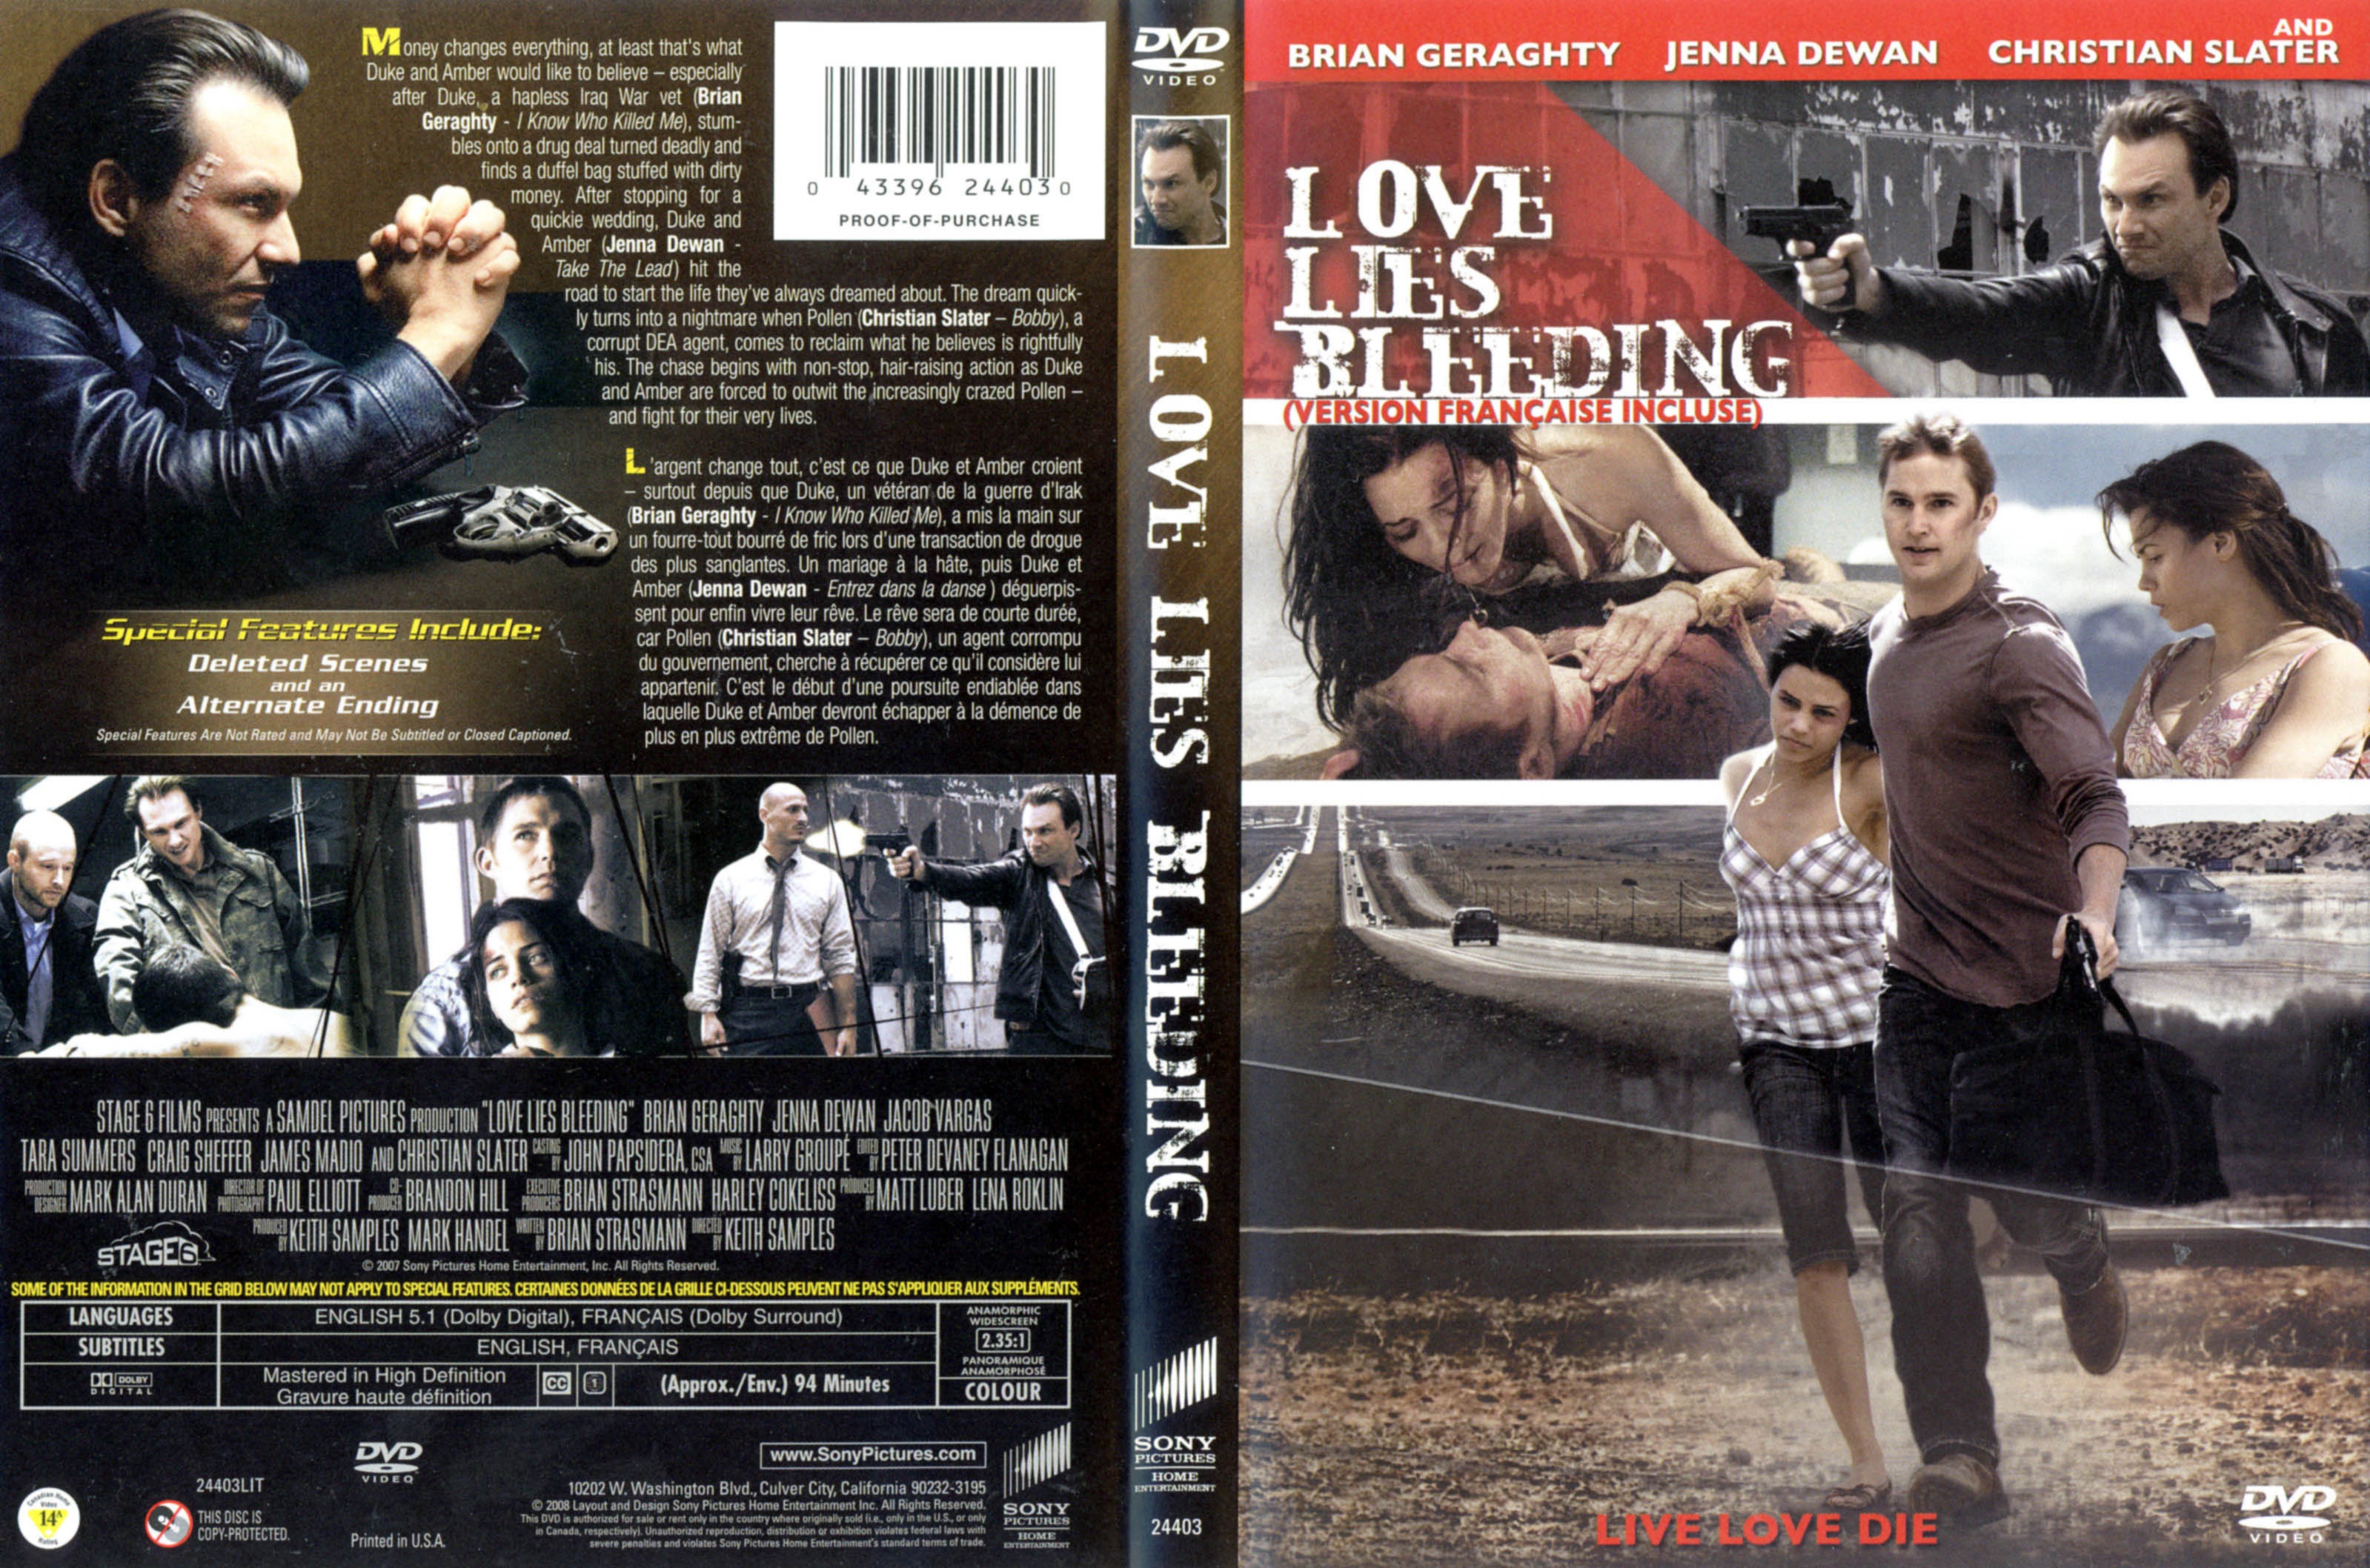 Jaquette DVD Love lies bleeding